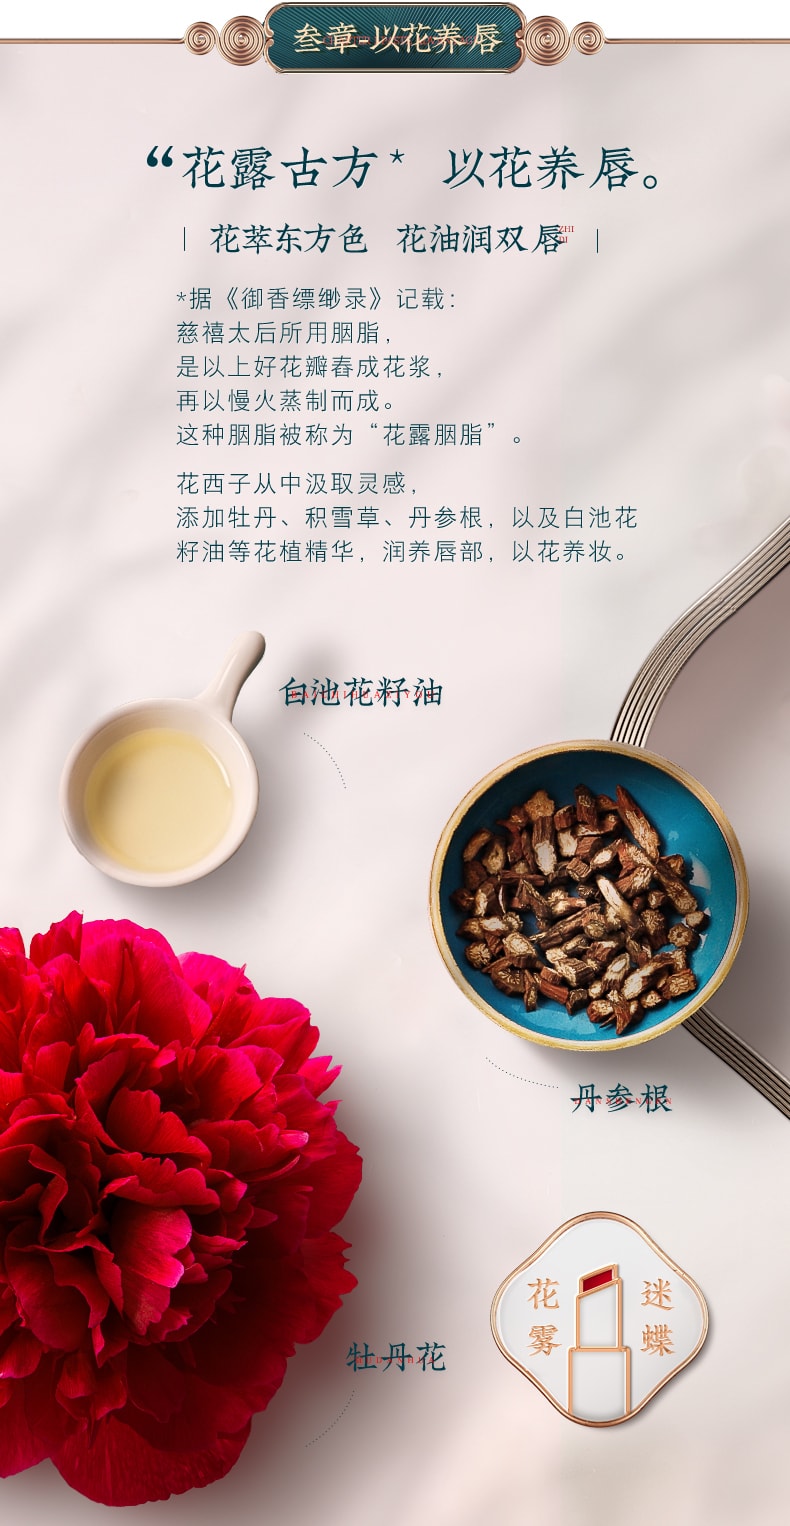 [China Direct Mail] Huaxizi Flower Lipstick Matte Matte Moisturizing Lipstick M103 Xiaohongchun (Matte Maple Brown Red)